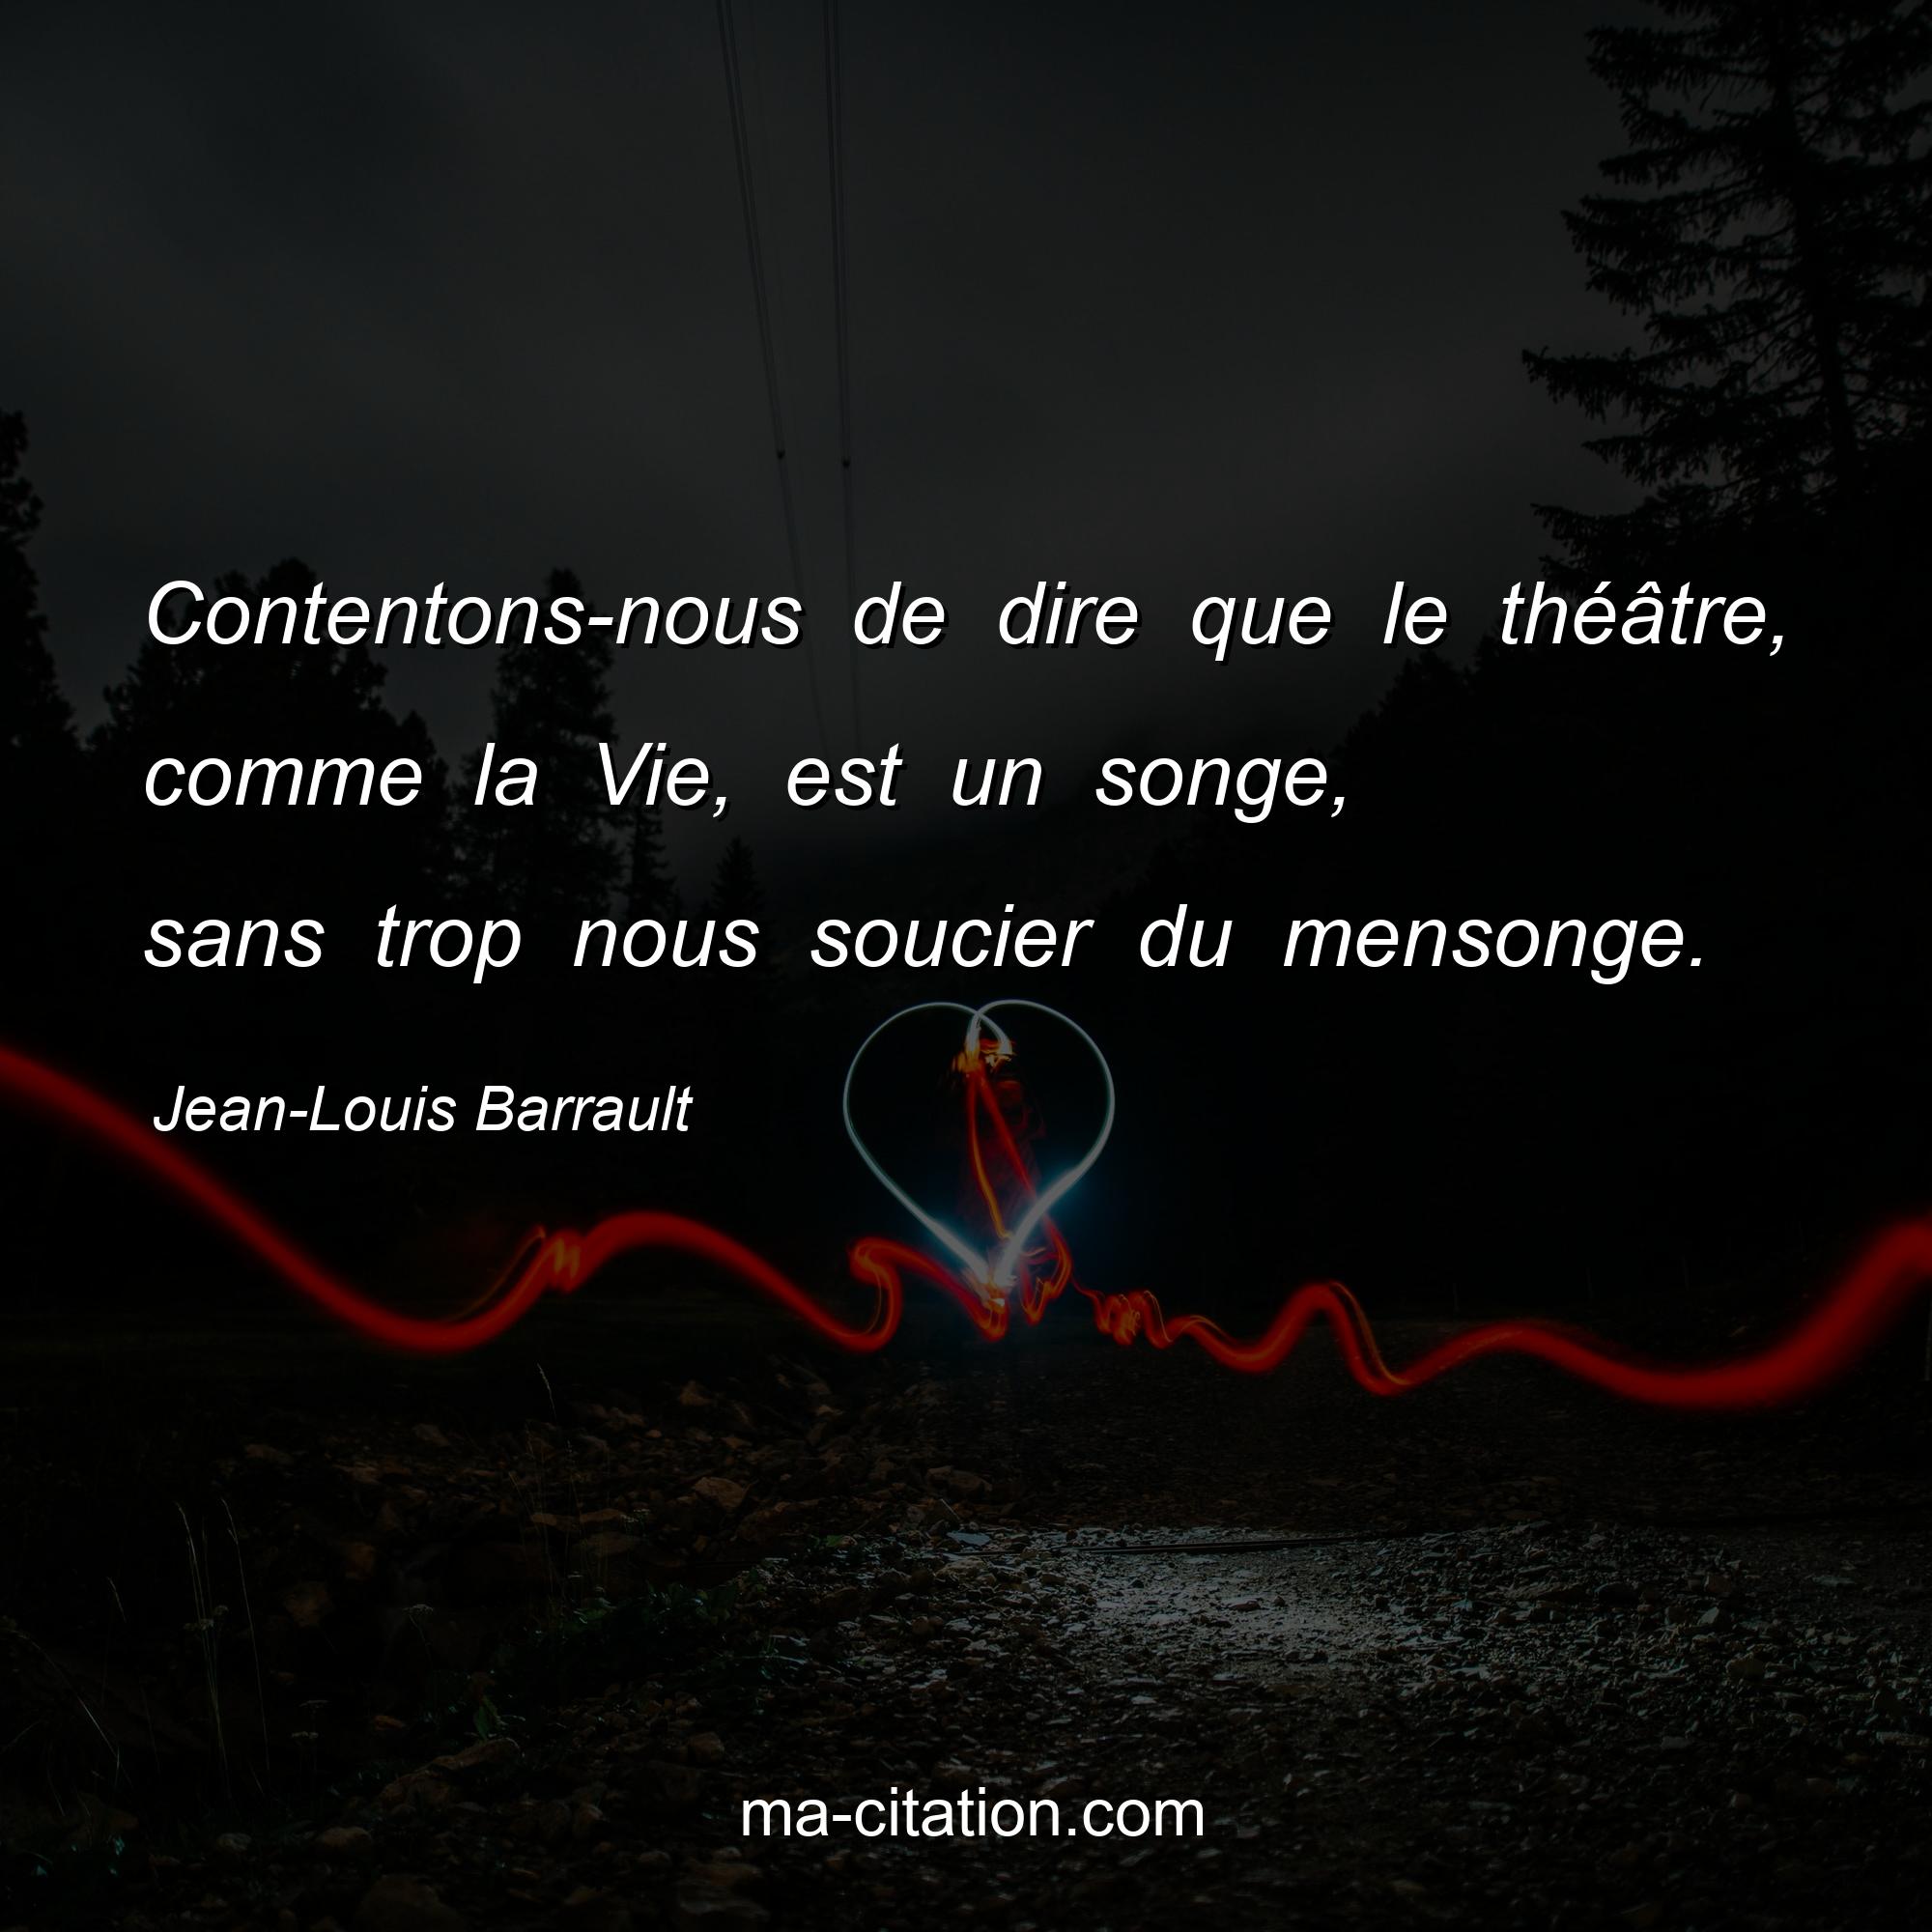 Jean-Louis Barrault : Contentons-nous de dire que le théâtre, comme la Vie, est un songe, sans trop nous soucier du mensonge.